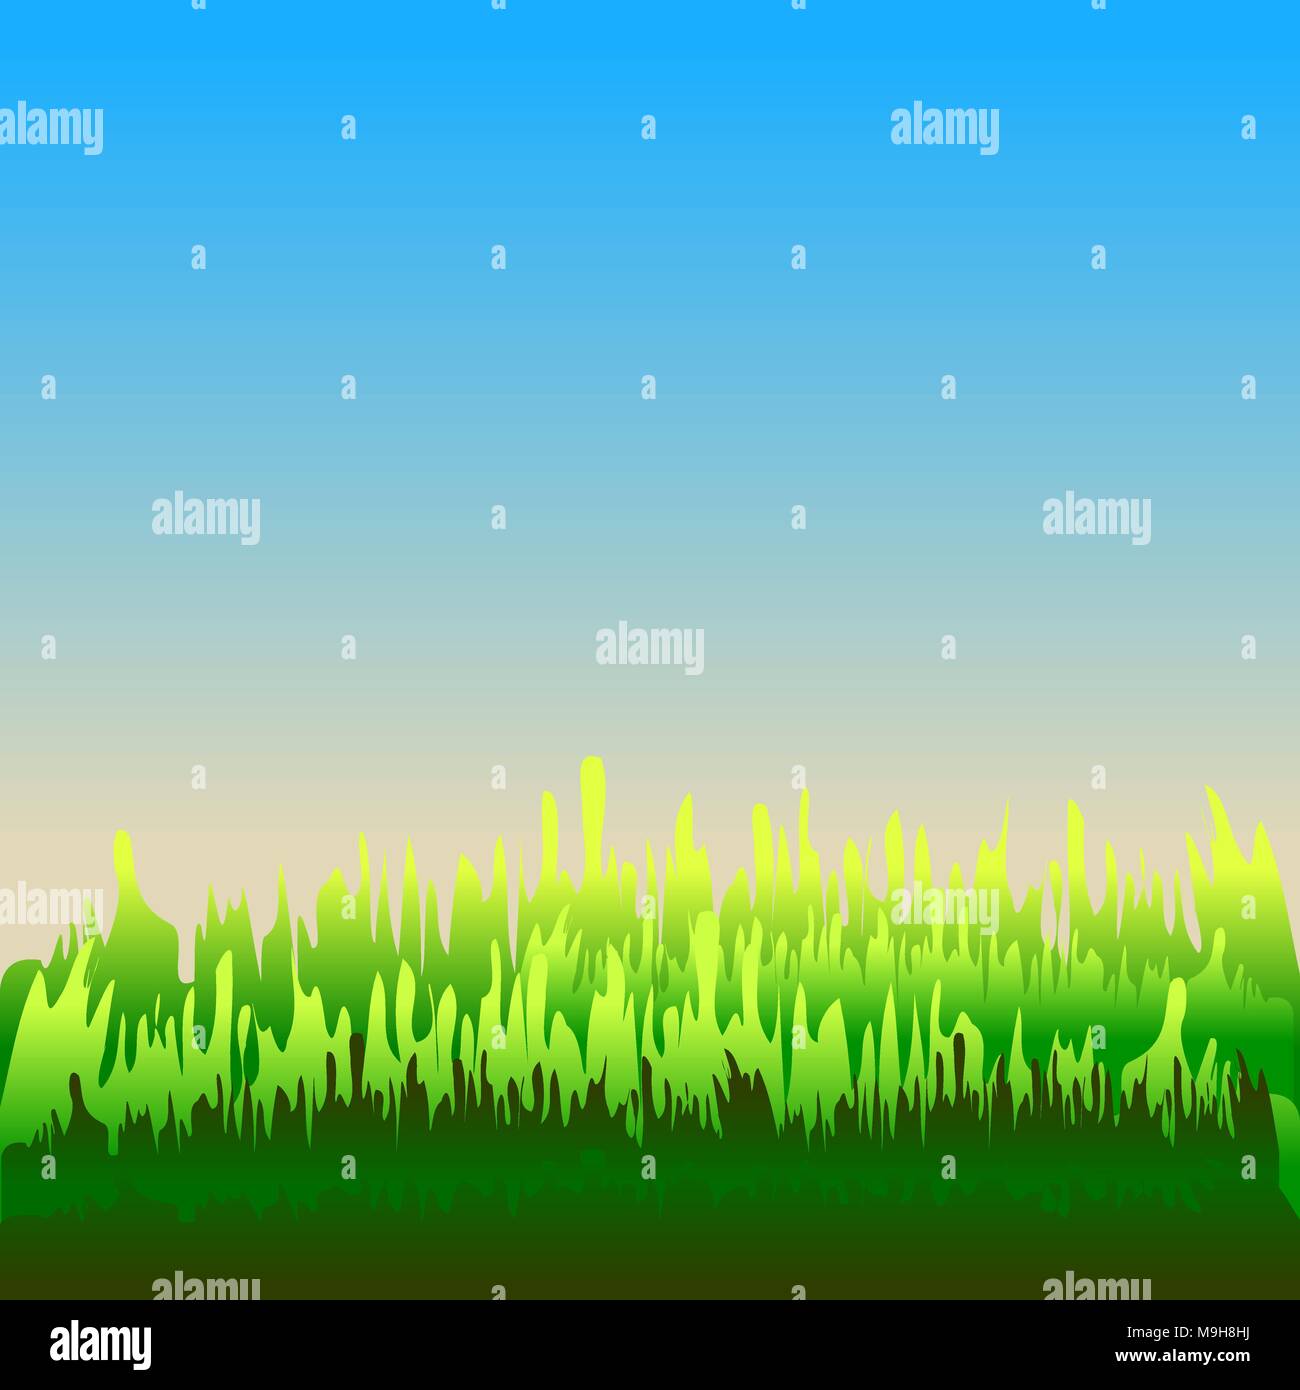 Abstrakte farbenfrohe Hintergrund der grünen, blauen und orangen Farben. Ähnlich Rasenfläche und klaren Himmel am Morgen oder am Abend. Stock Vektor